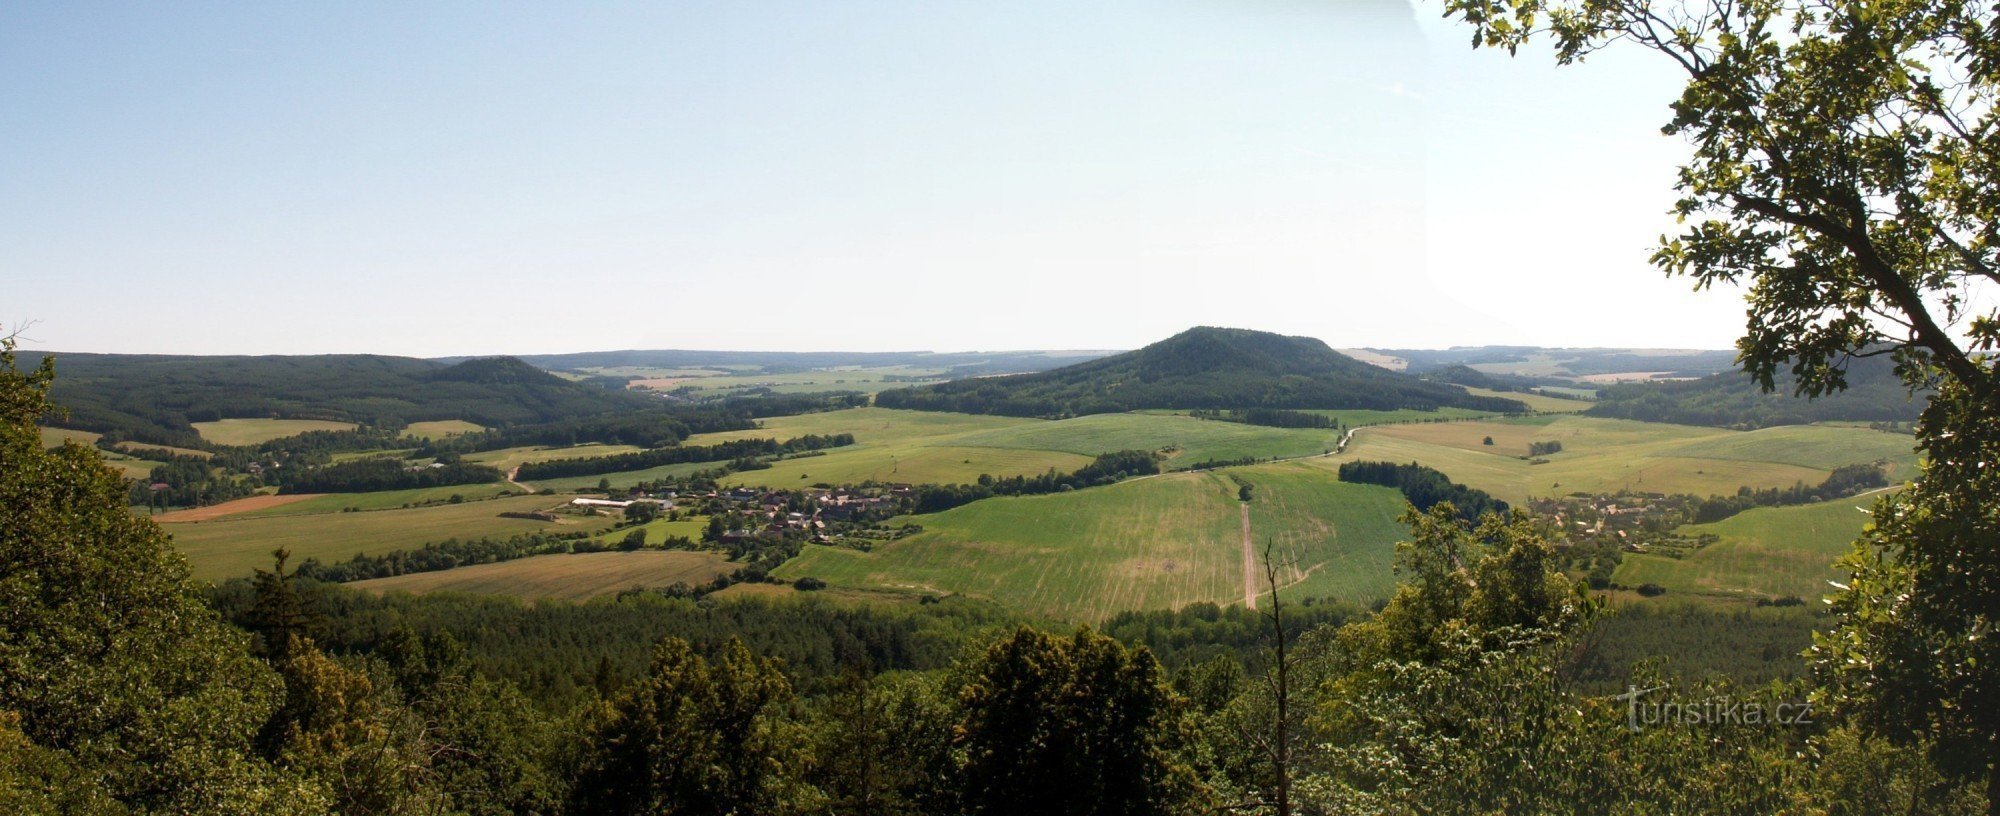 Pogled na krajolik regije Manětín s vidikovca